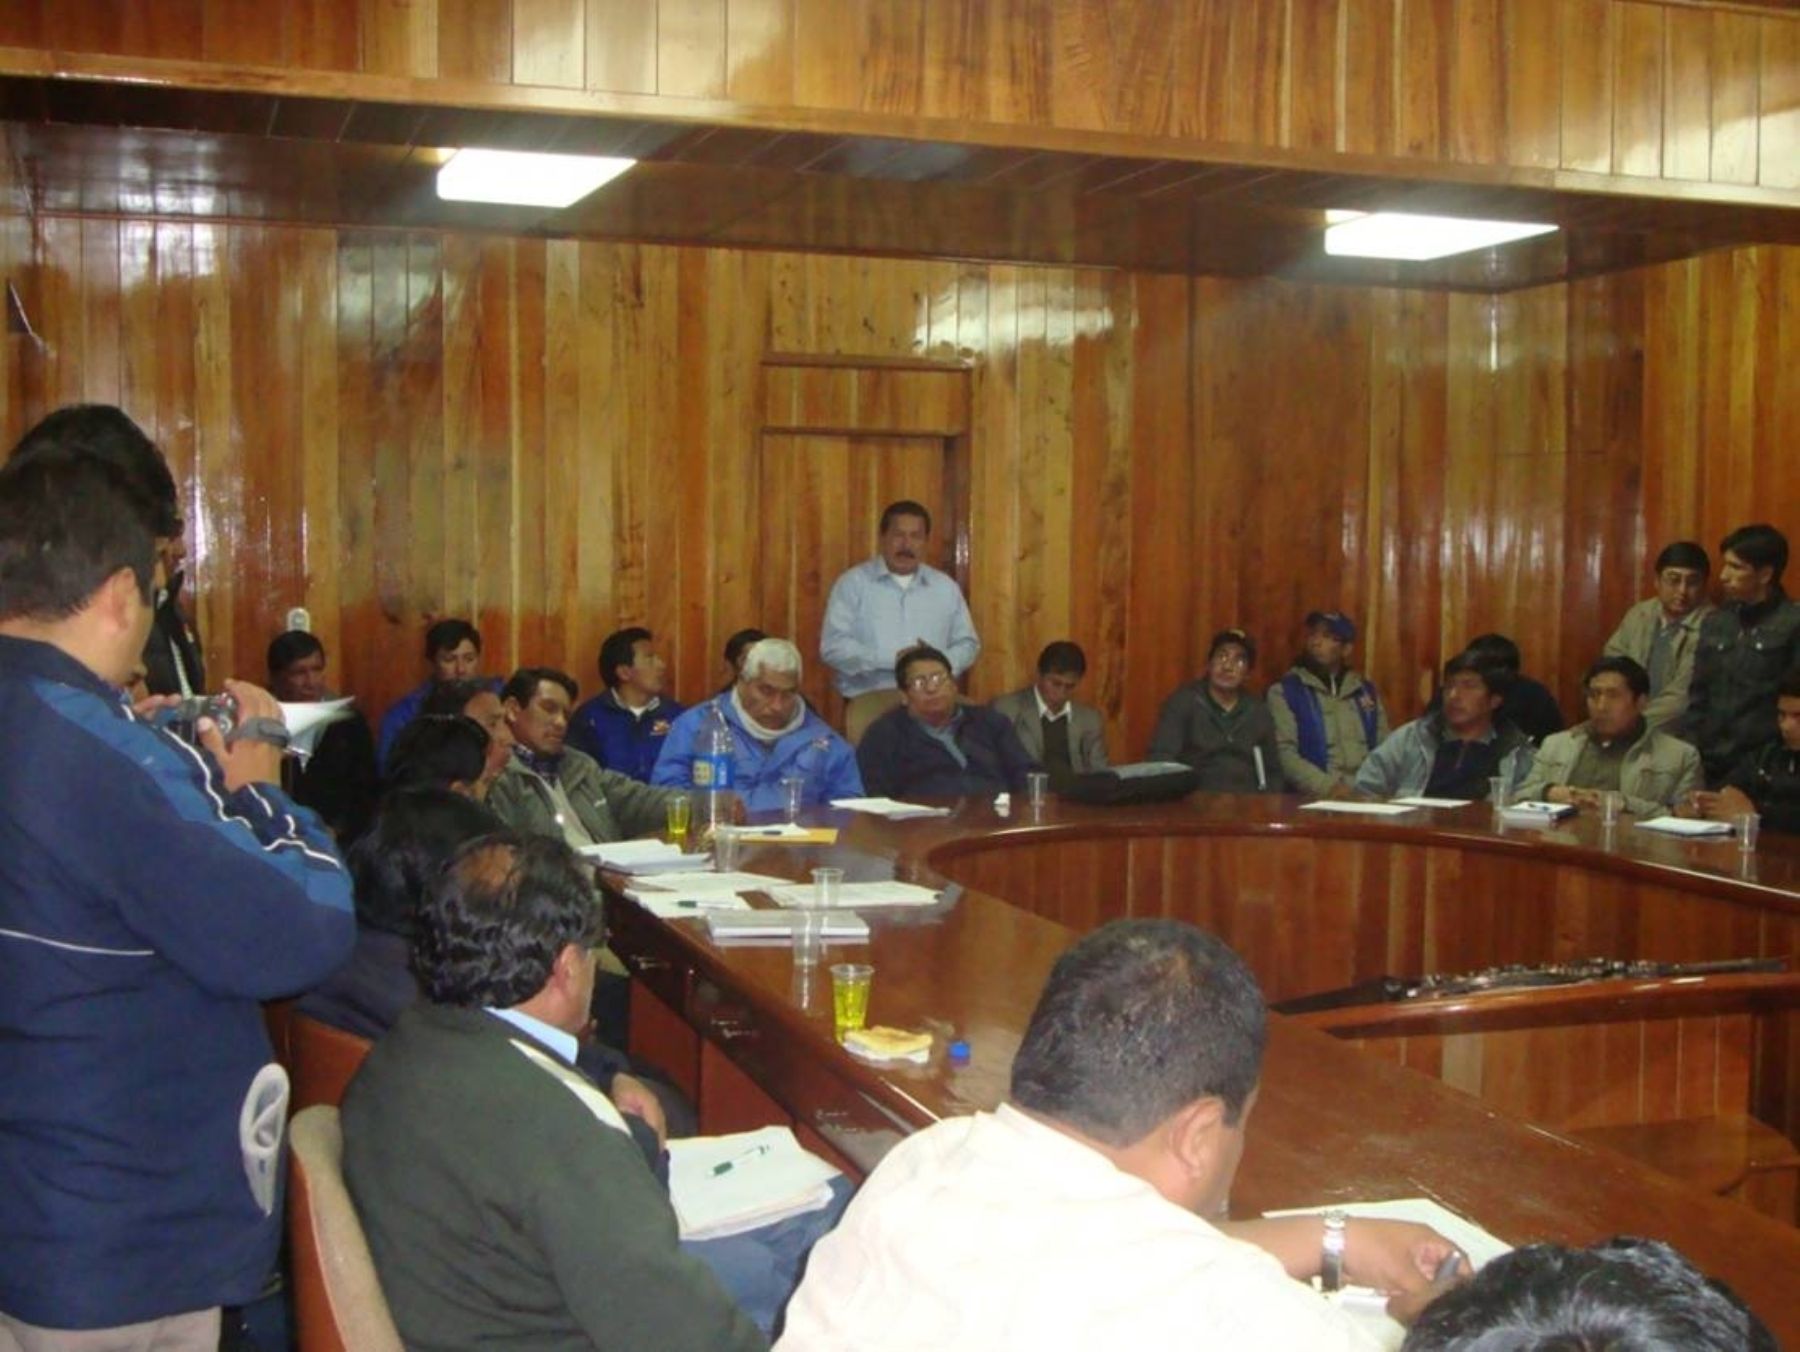 Representantes del Minag con funcionarios de gobiernos locales y regional de Puno.